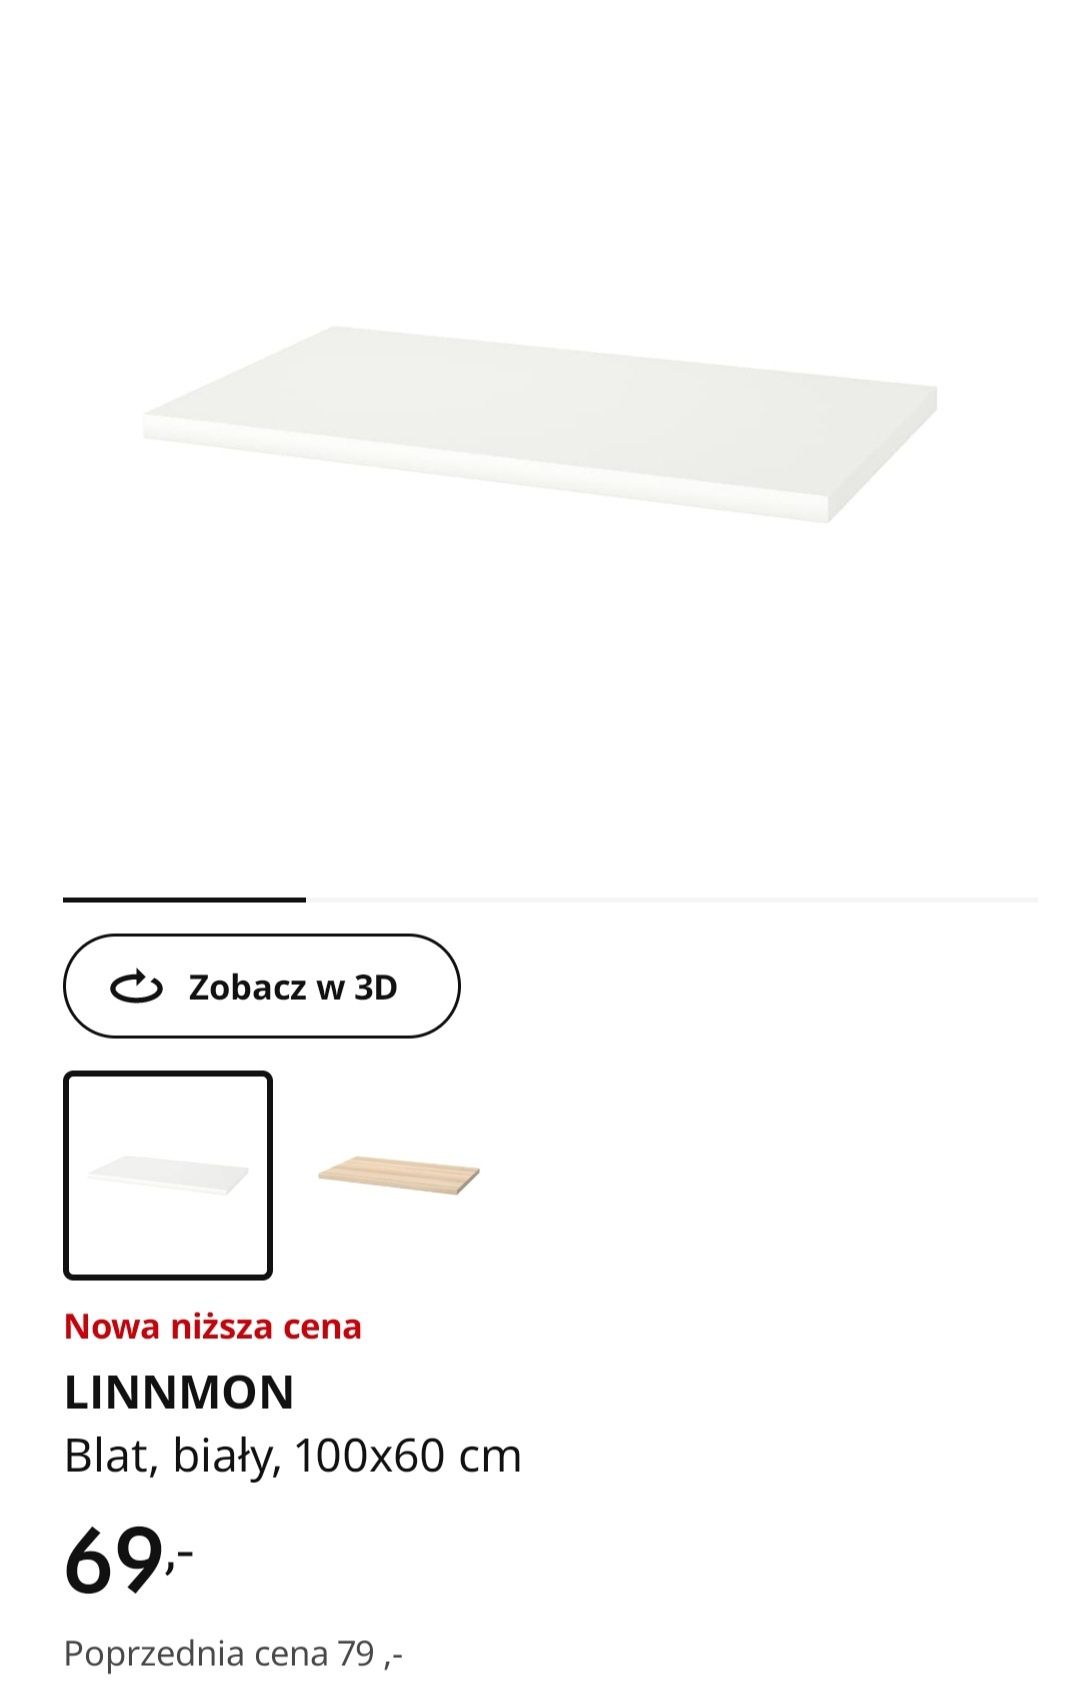 Blat bialy IKEA linnmon 100 cm X 60cm